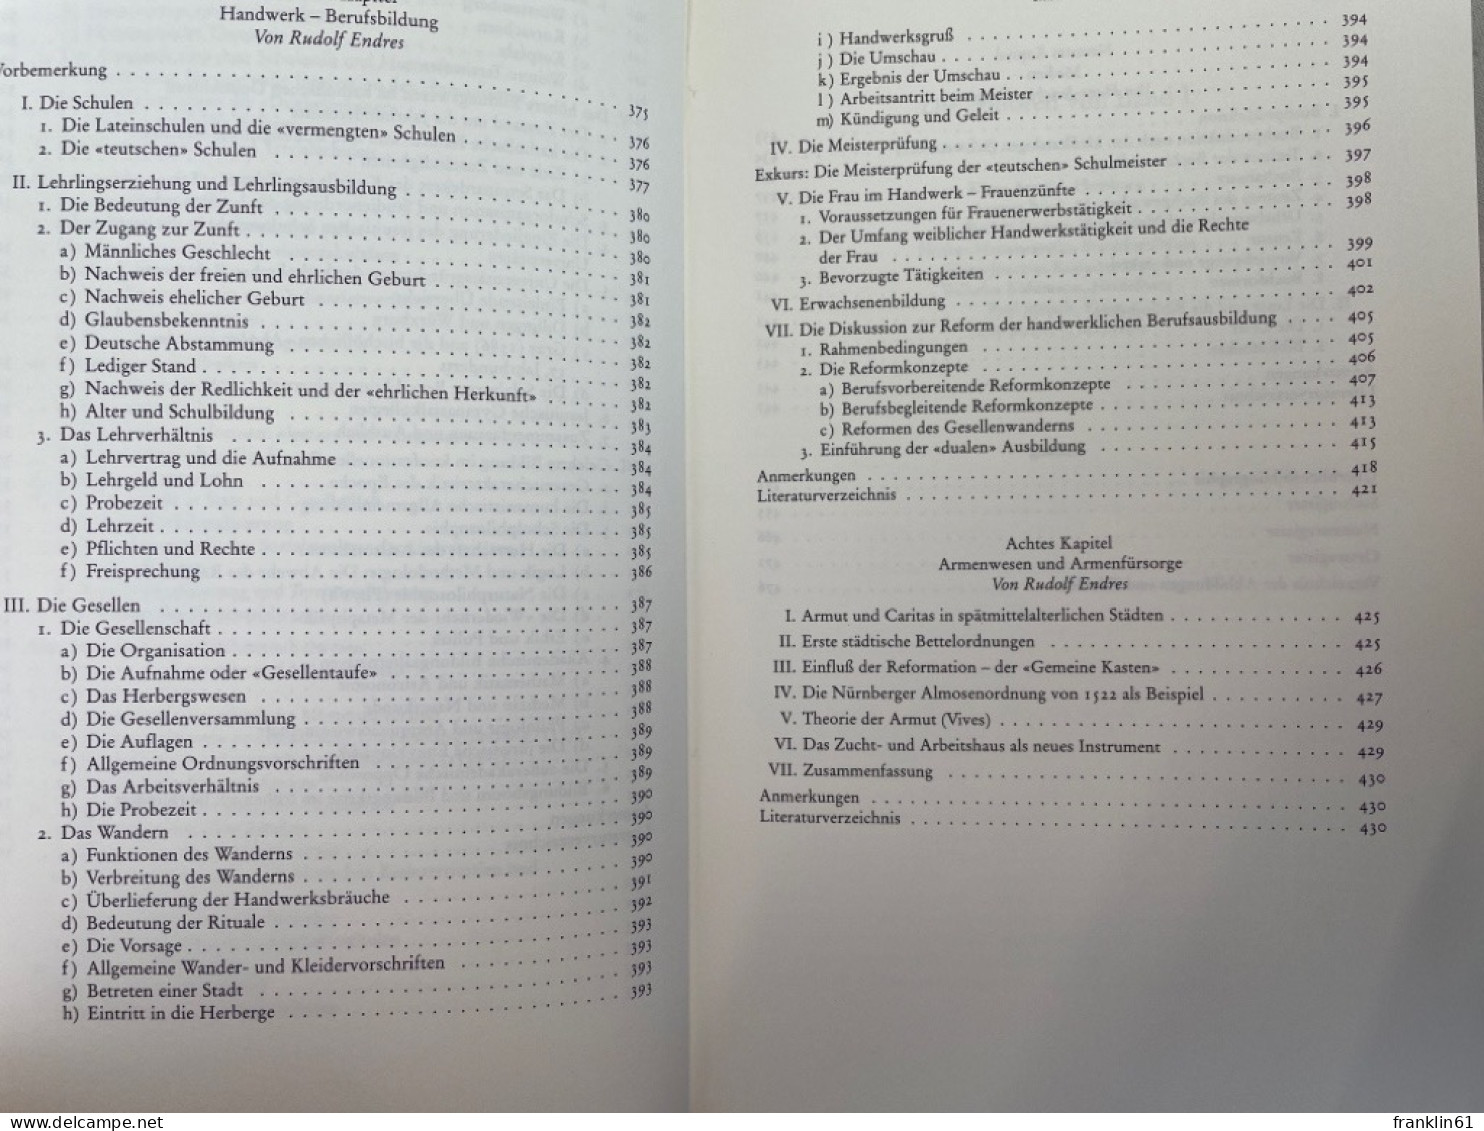 Handbuch der deutschen Bildungsgeschichte; Band 1., 15. - 17. Jahrhundert : von der Renaissance und der Reform